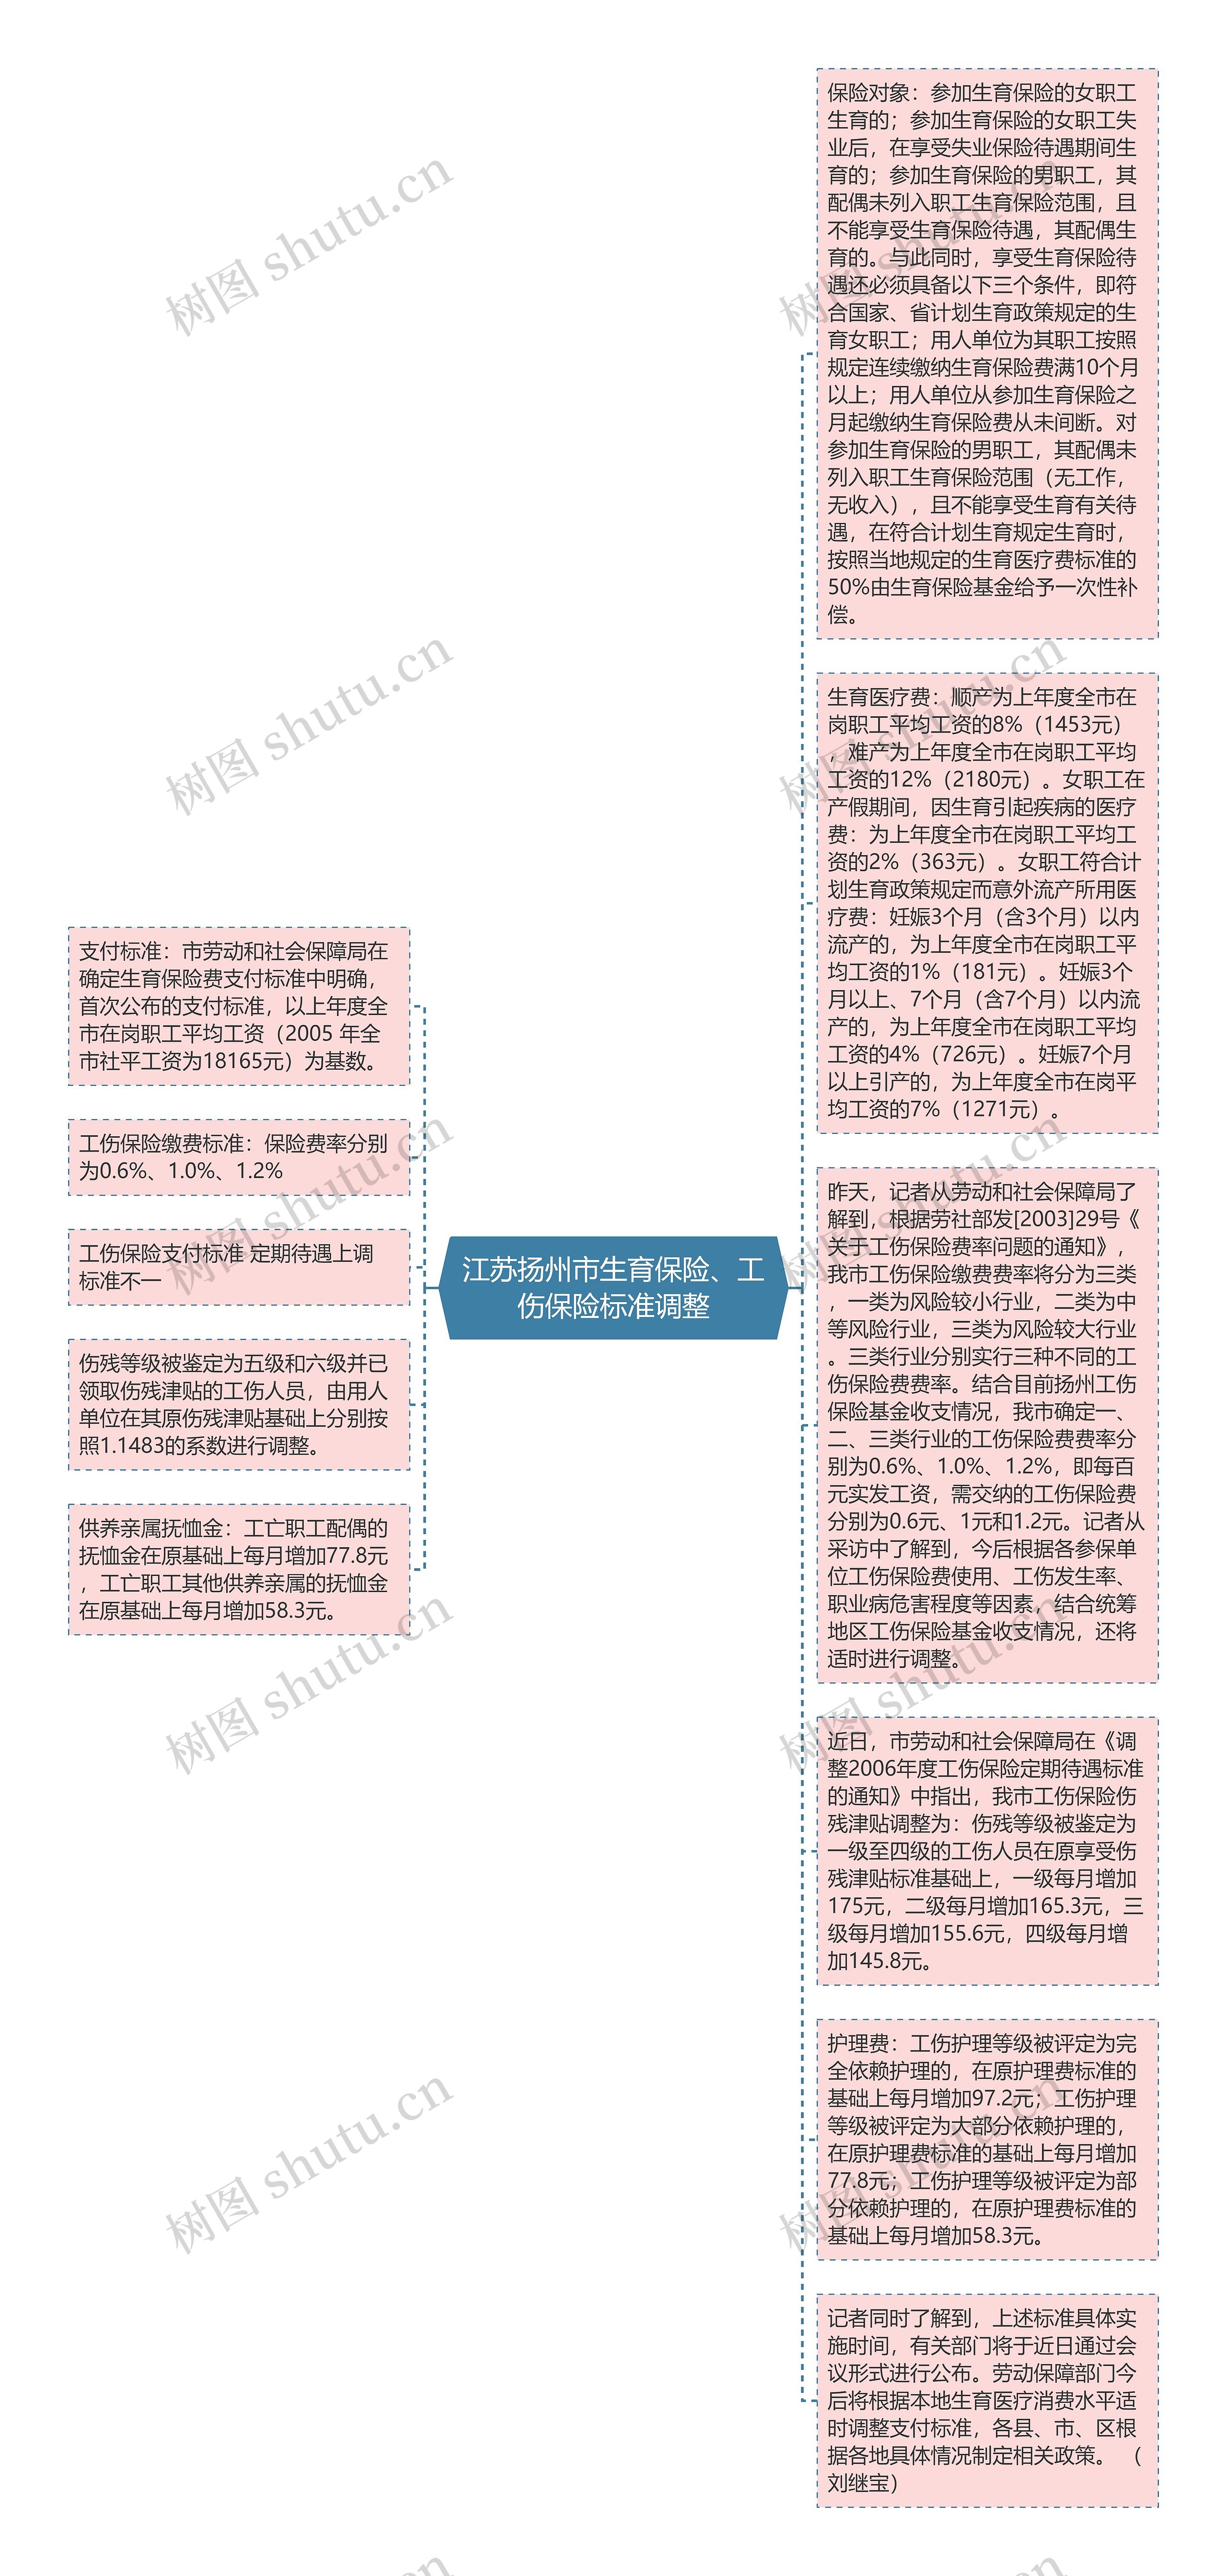 江苏扬州市生育保险、工伤保险标准调整